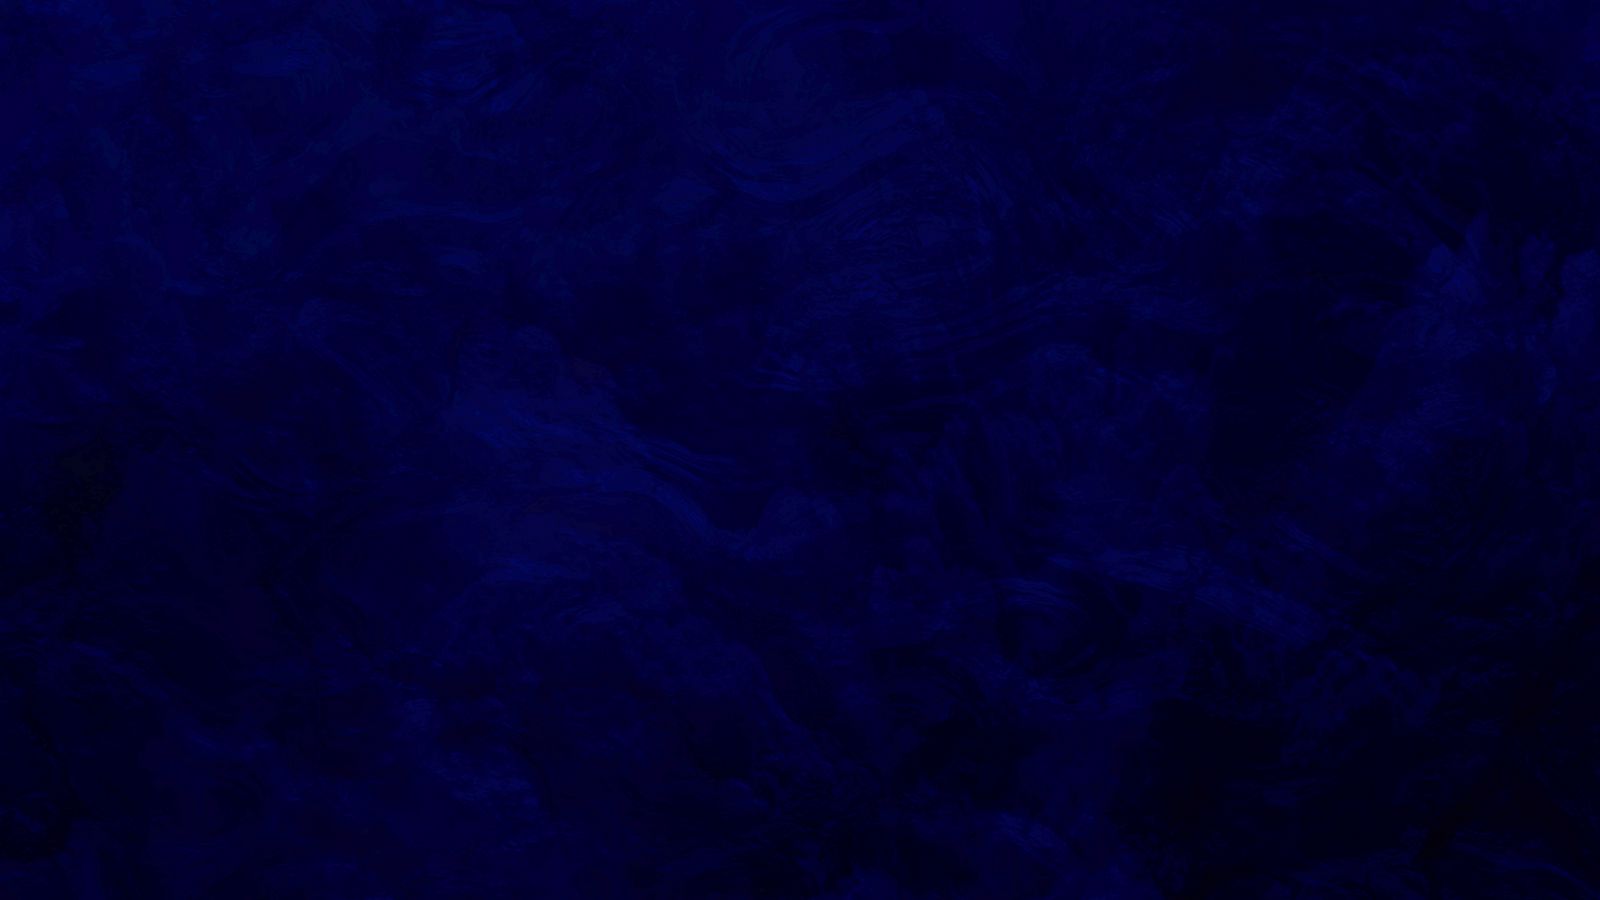 Download wallpaper 1600x900 texture, surface, dark, blue widescreen 16:9 hd  background